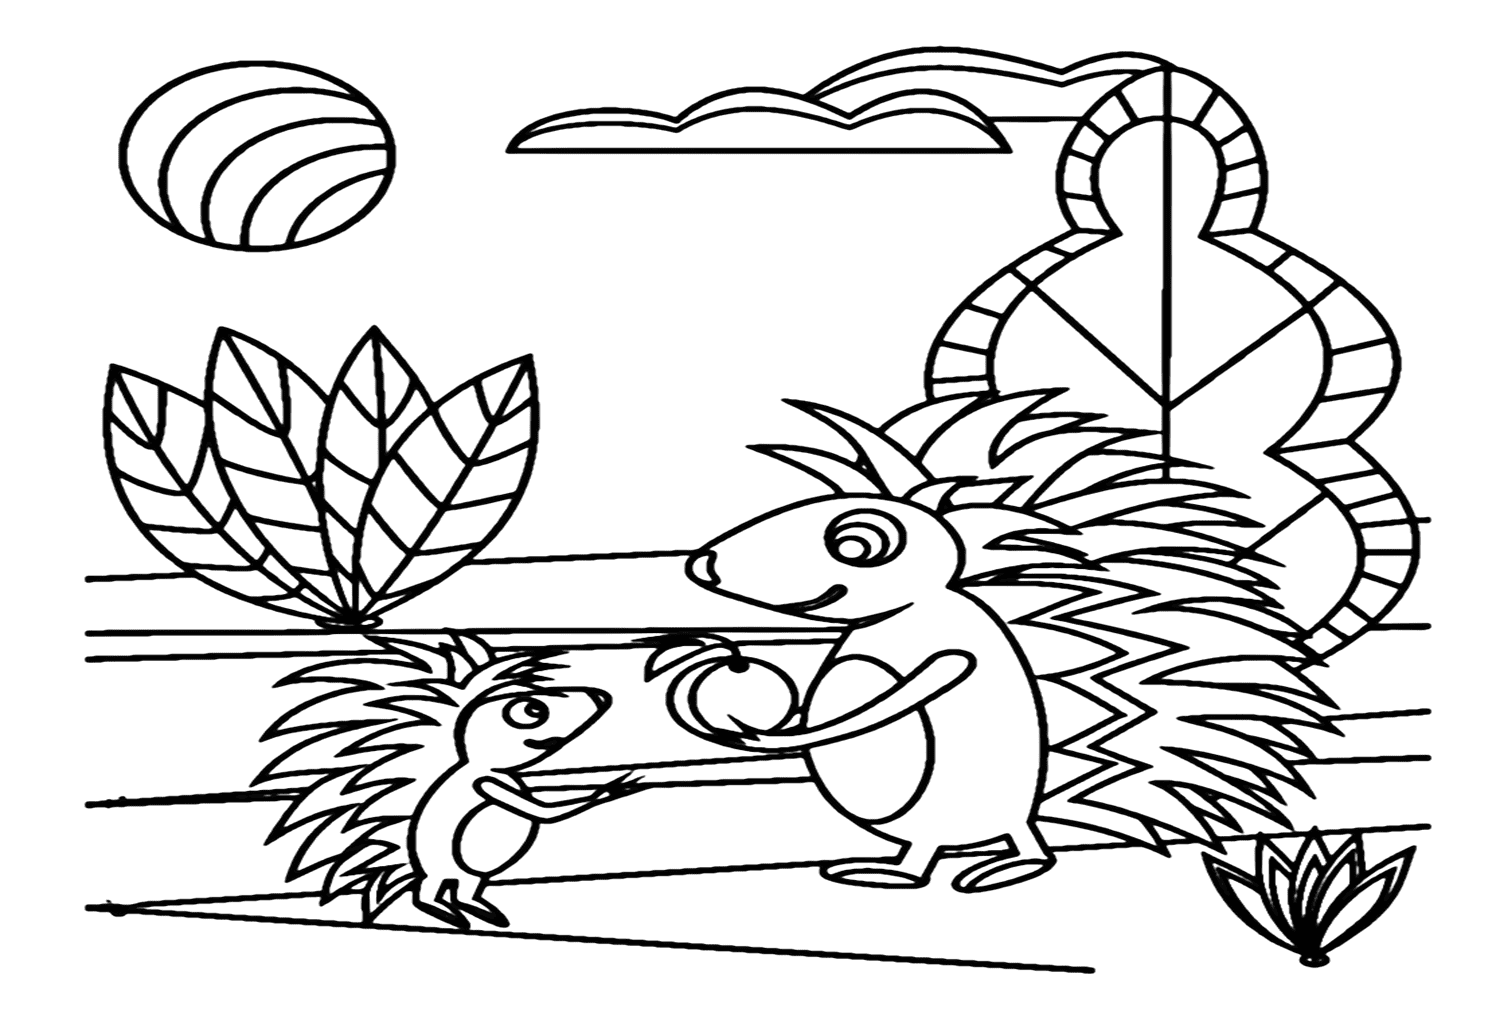 Раскраска Дикобраз для детей от Porcupine